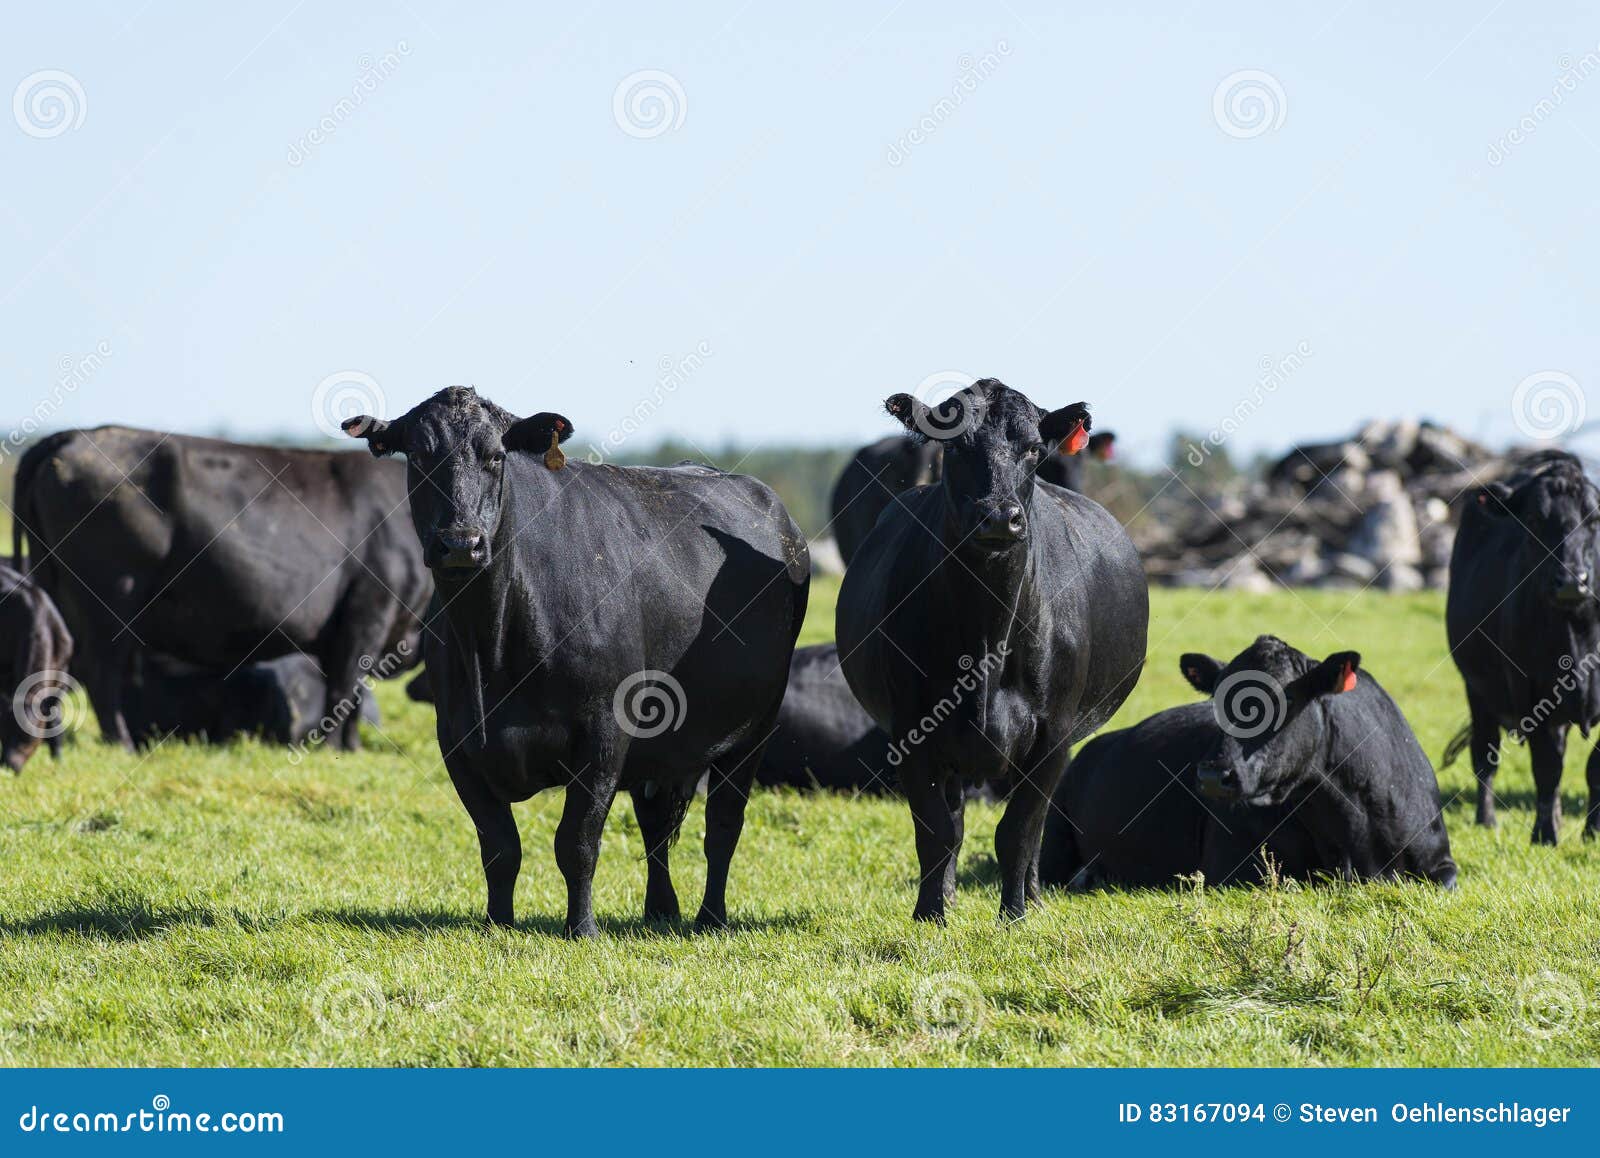 De zwarte koeien van stock foto. Image of stier 83167094